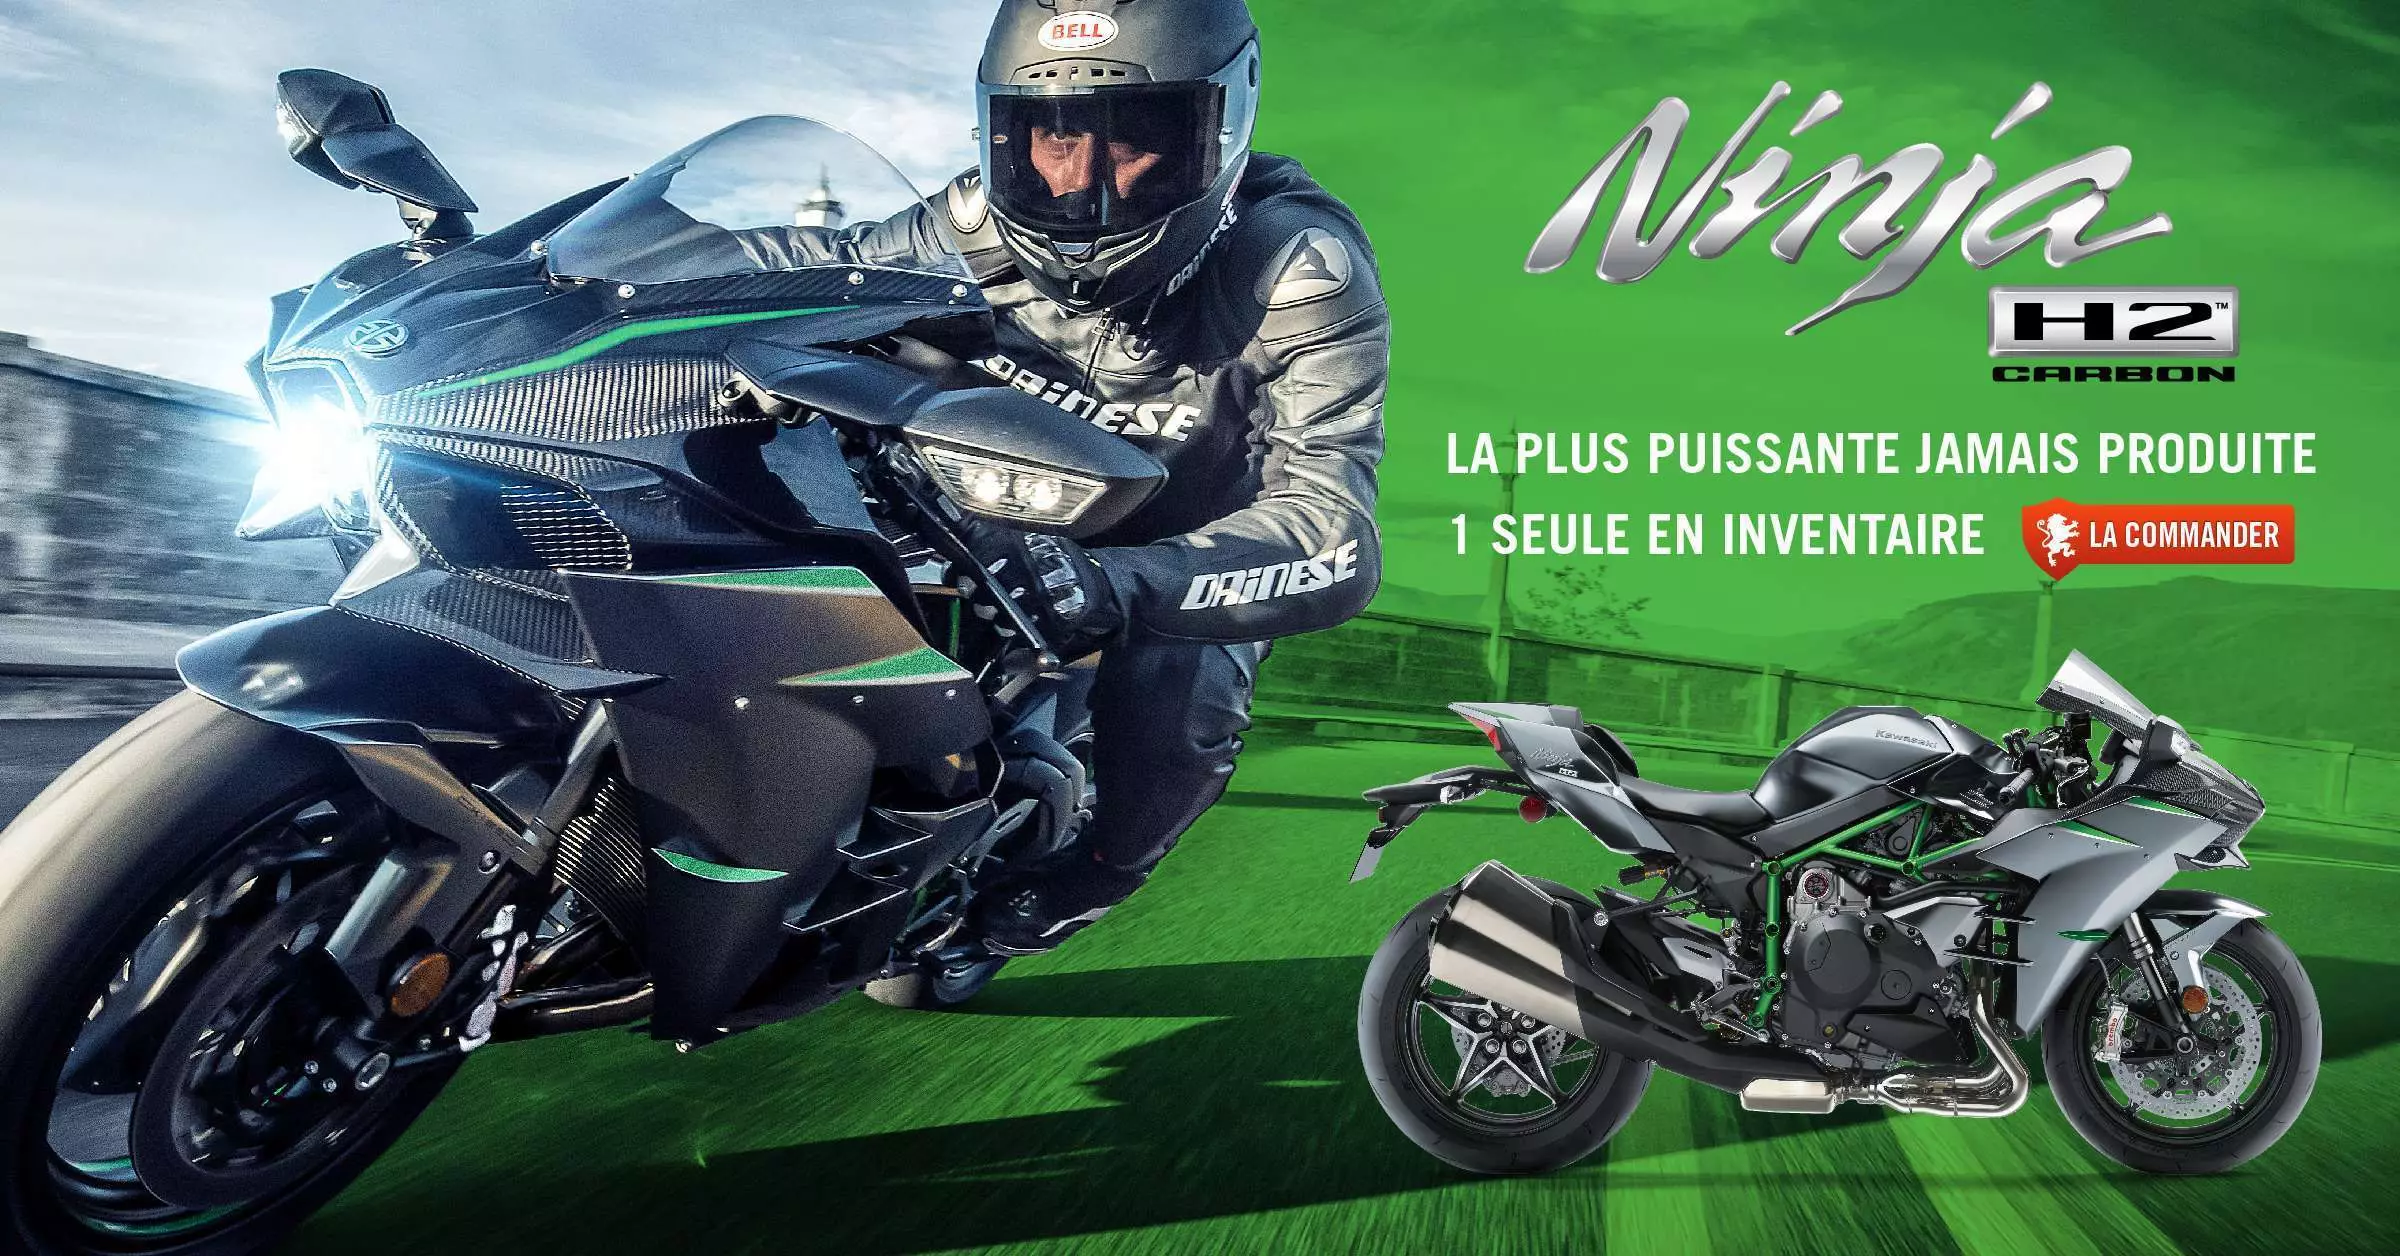 1 seule Kawasaki Ninja H2 Carbon 2019 en inventaire, commandez la!